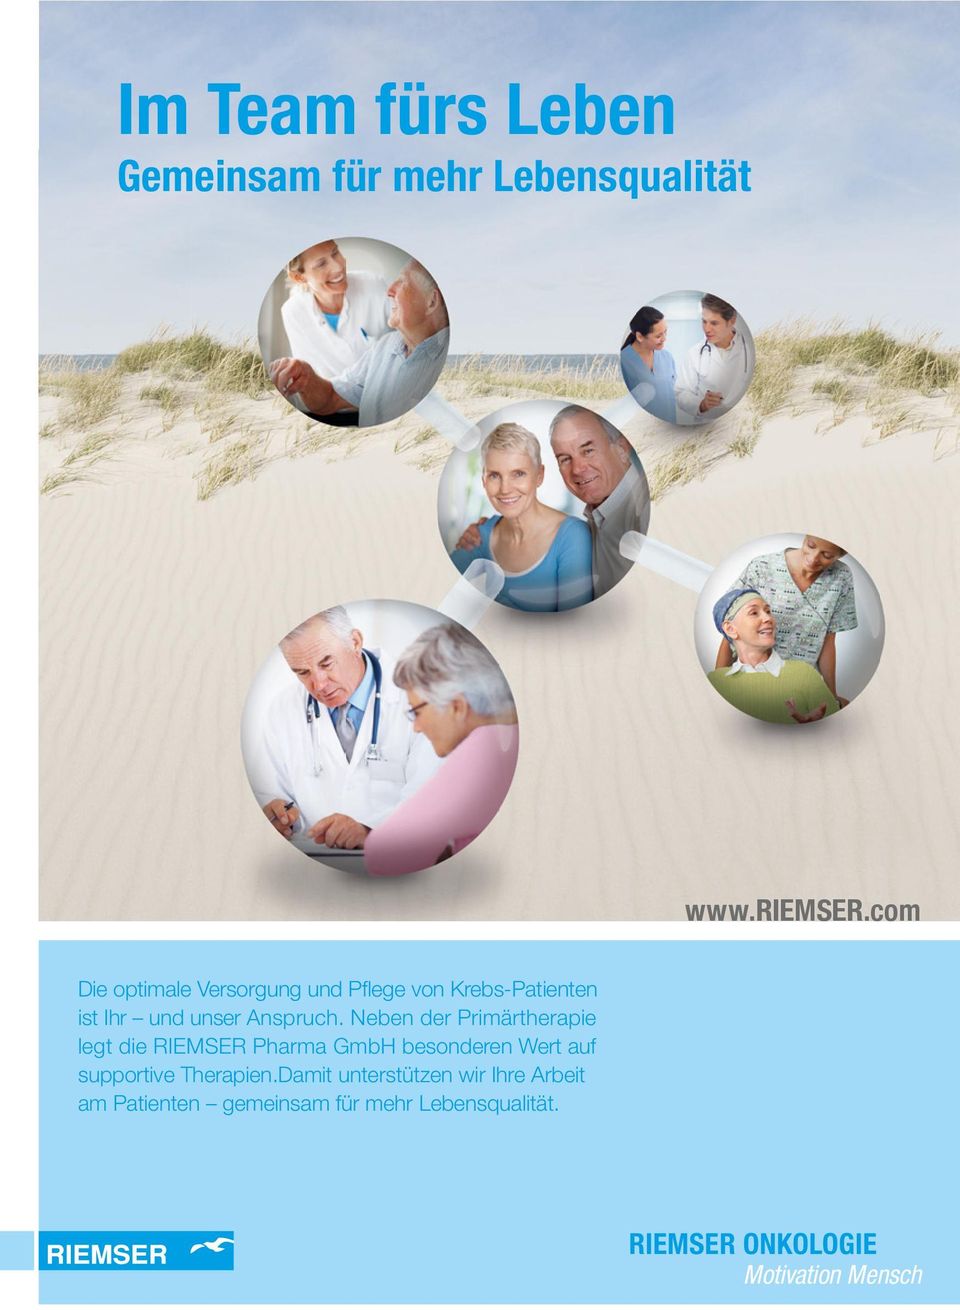 Neben der Primärtherapie legt die RIEMSER Pharma GmbH besonderen Wert auf supportive